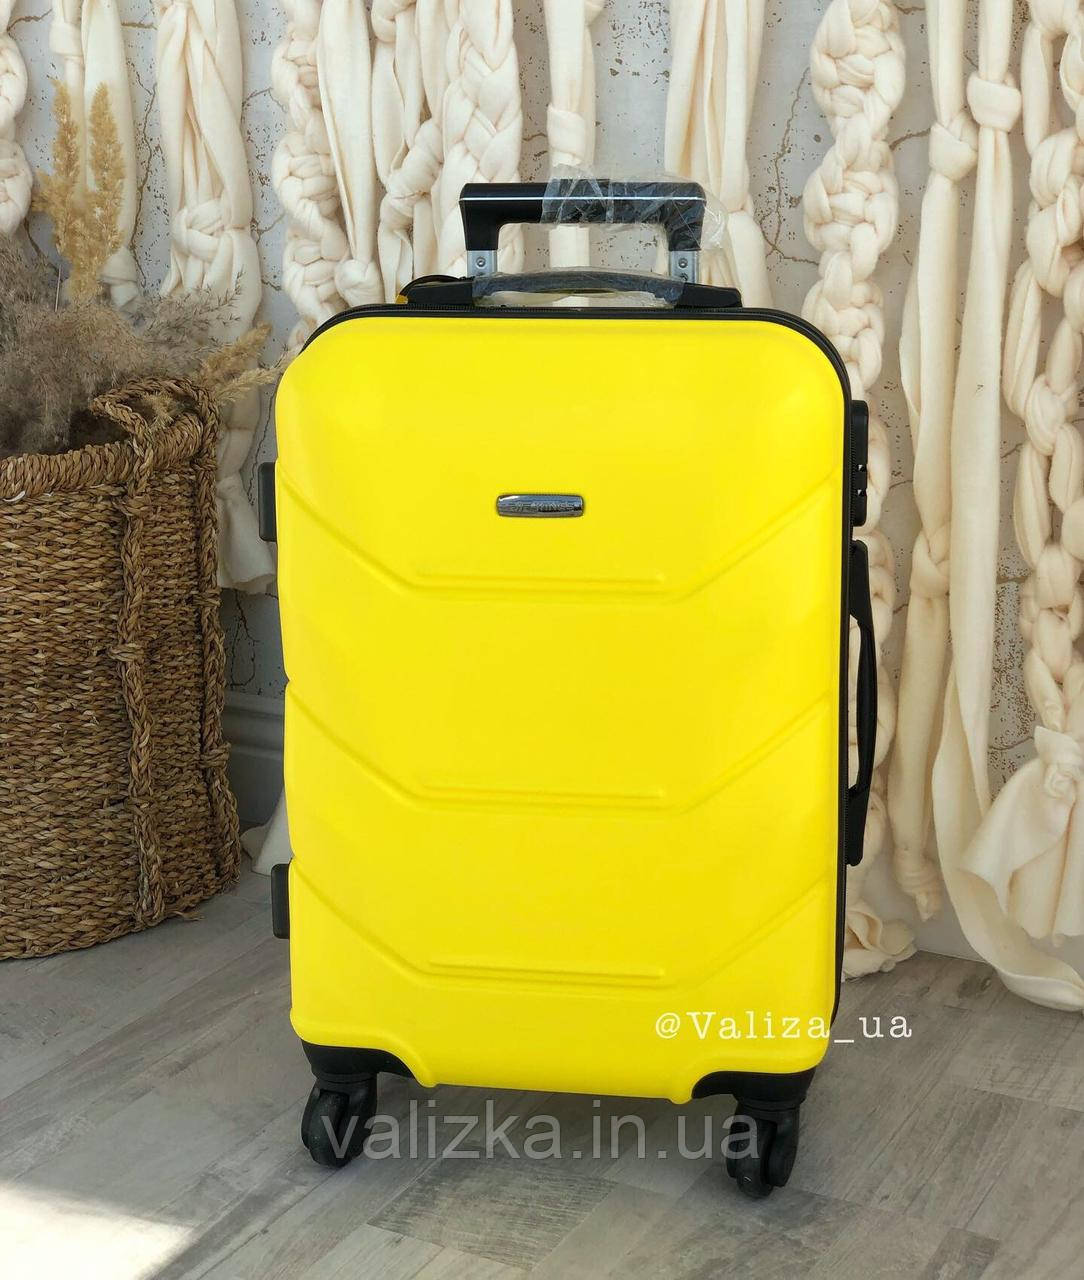 Жовтий пластиковий чемодан ручна поклажа